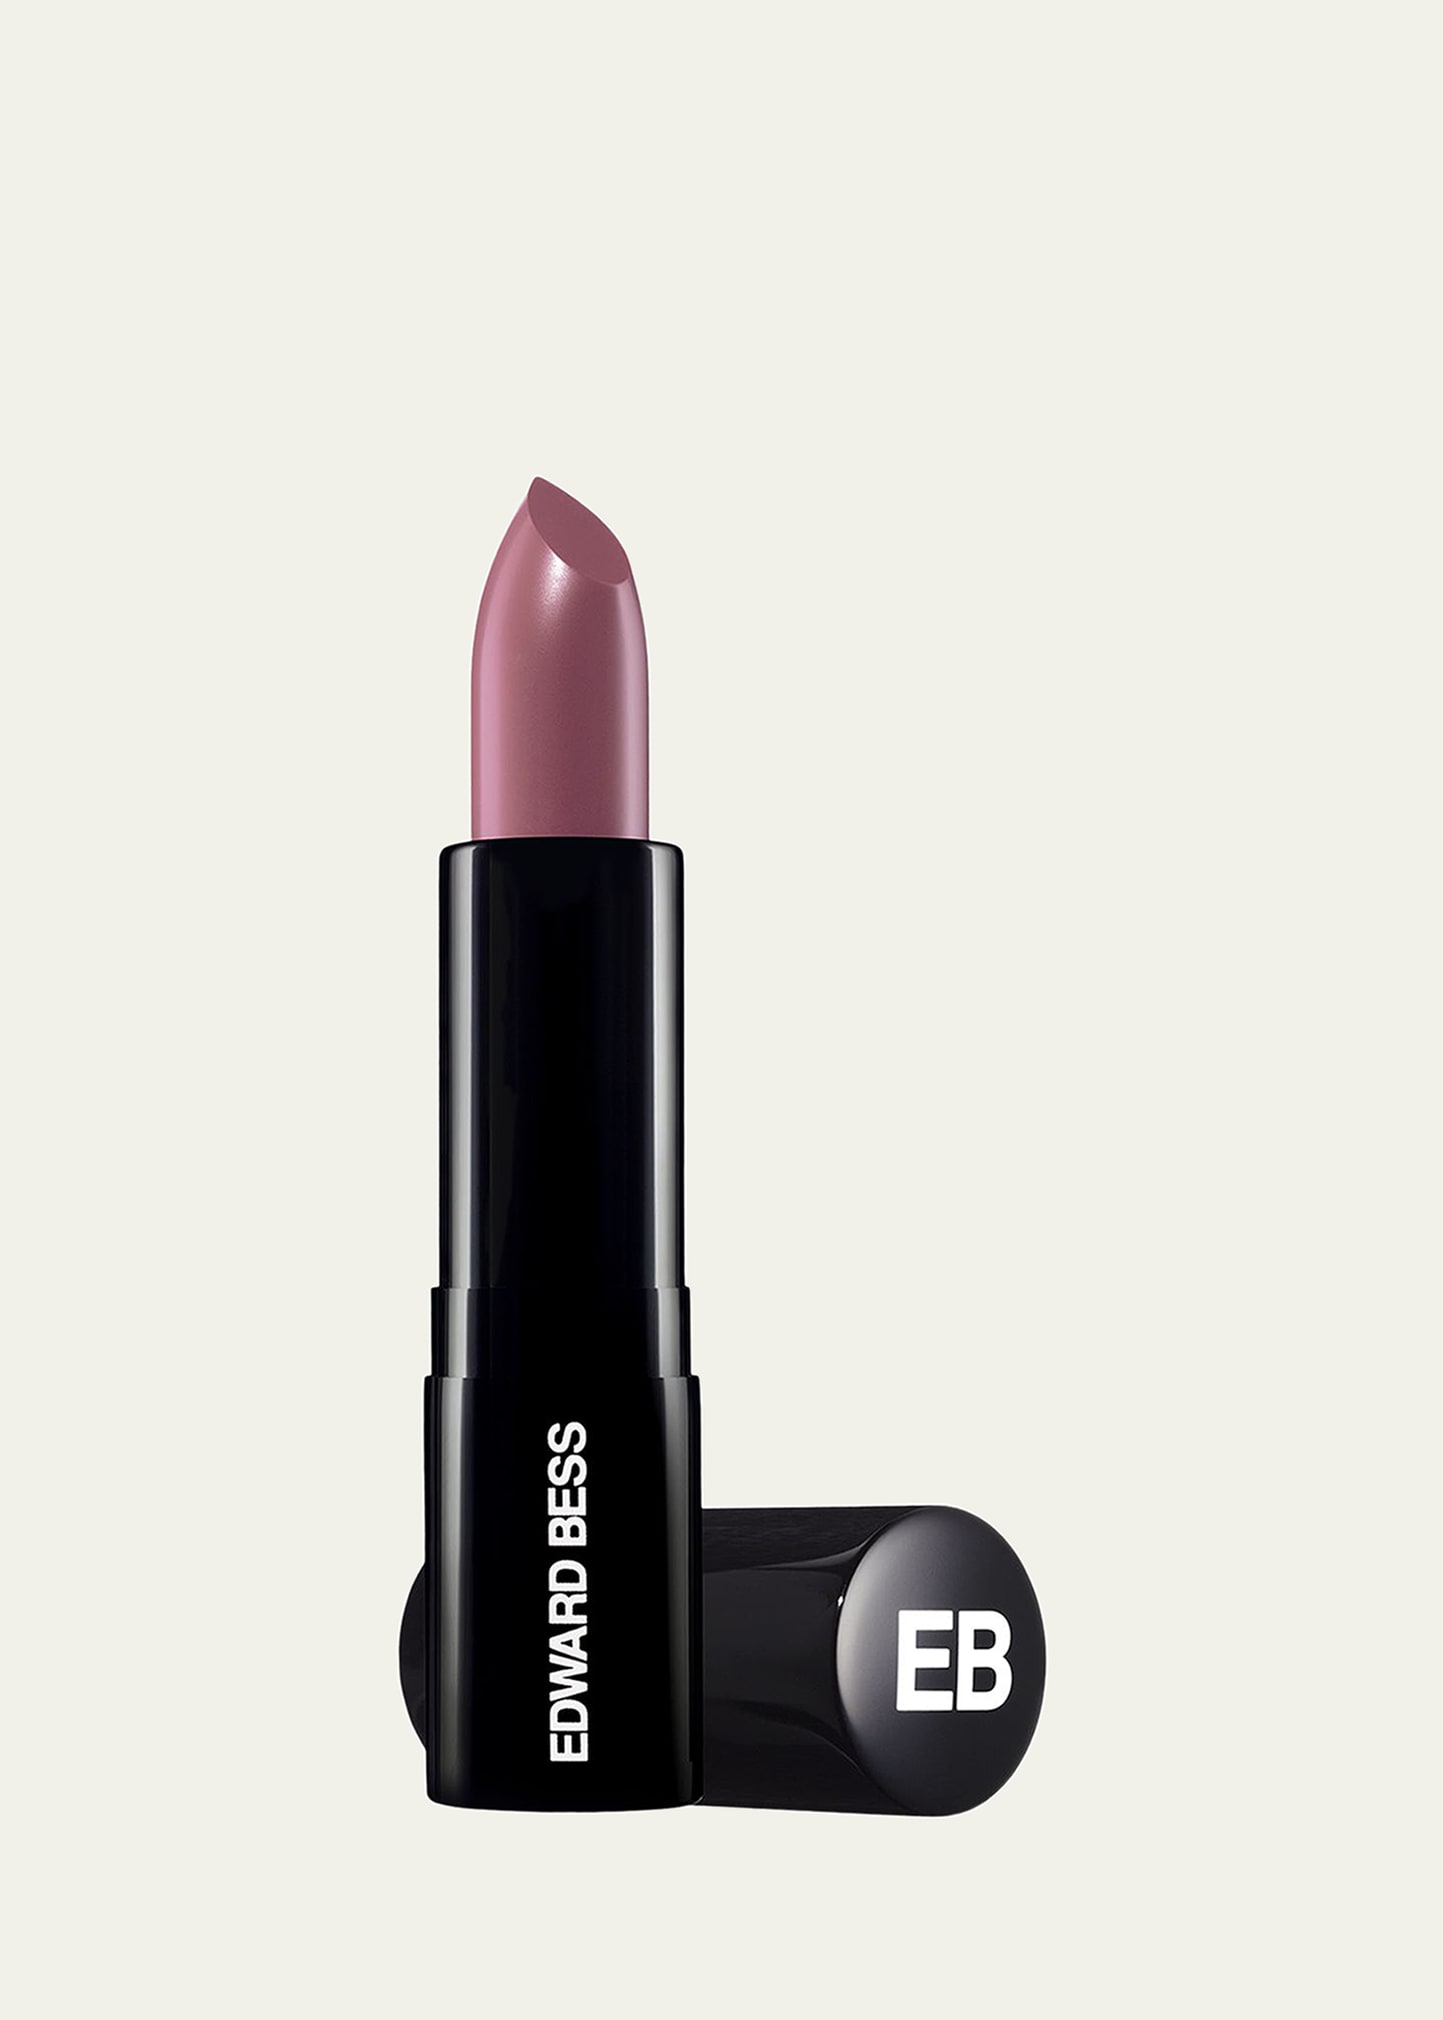 Edward Bess Ultra Slick Lipstick